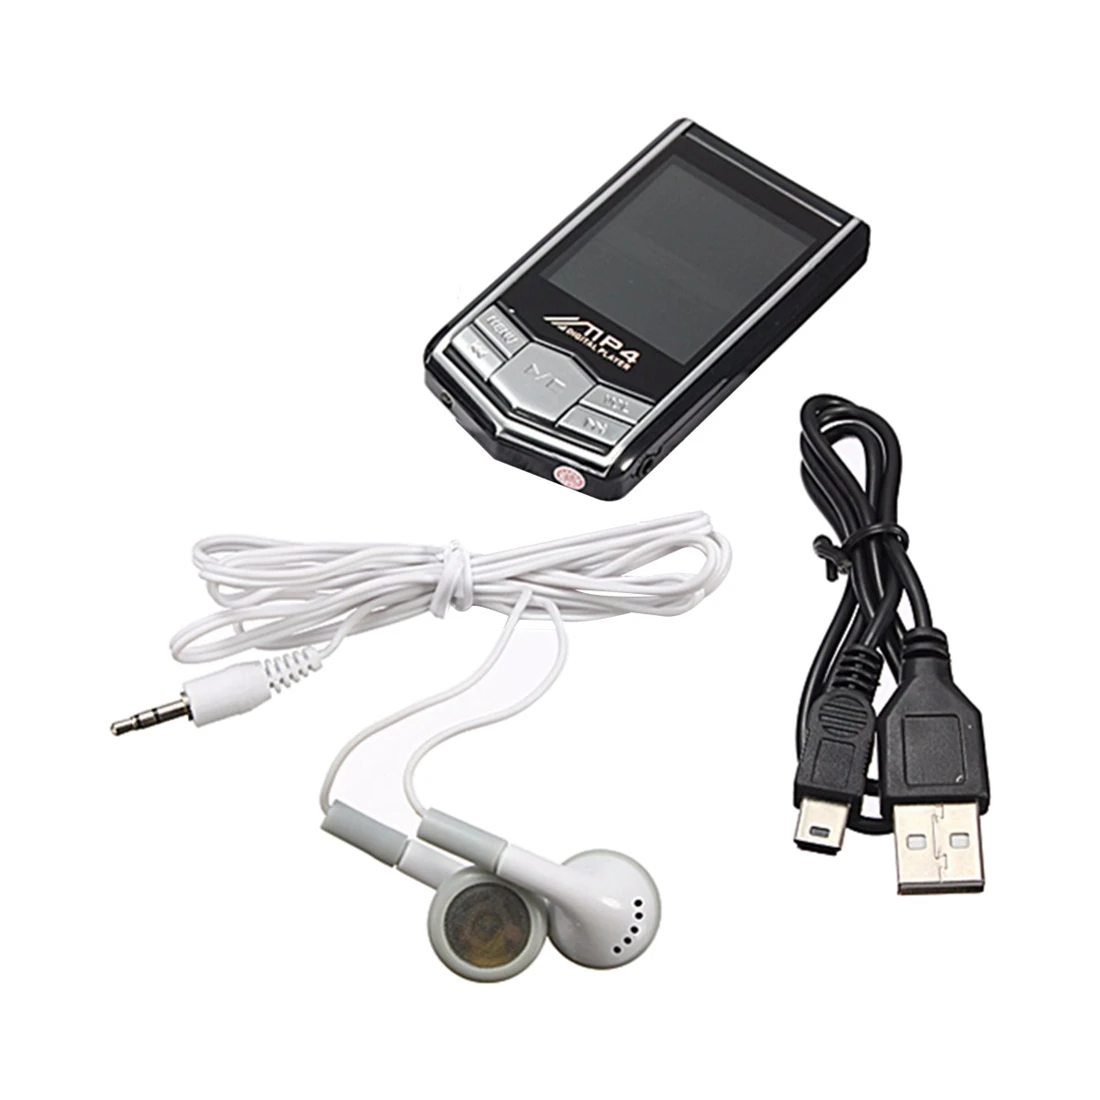 SCLS мини плеер 8 Гб MP3 MP4 LCD FM радио видео музыкальный медиаплеер диктофон |